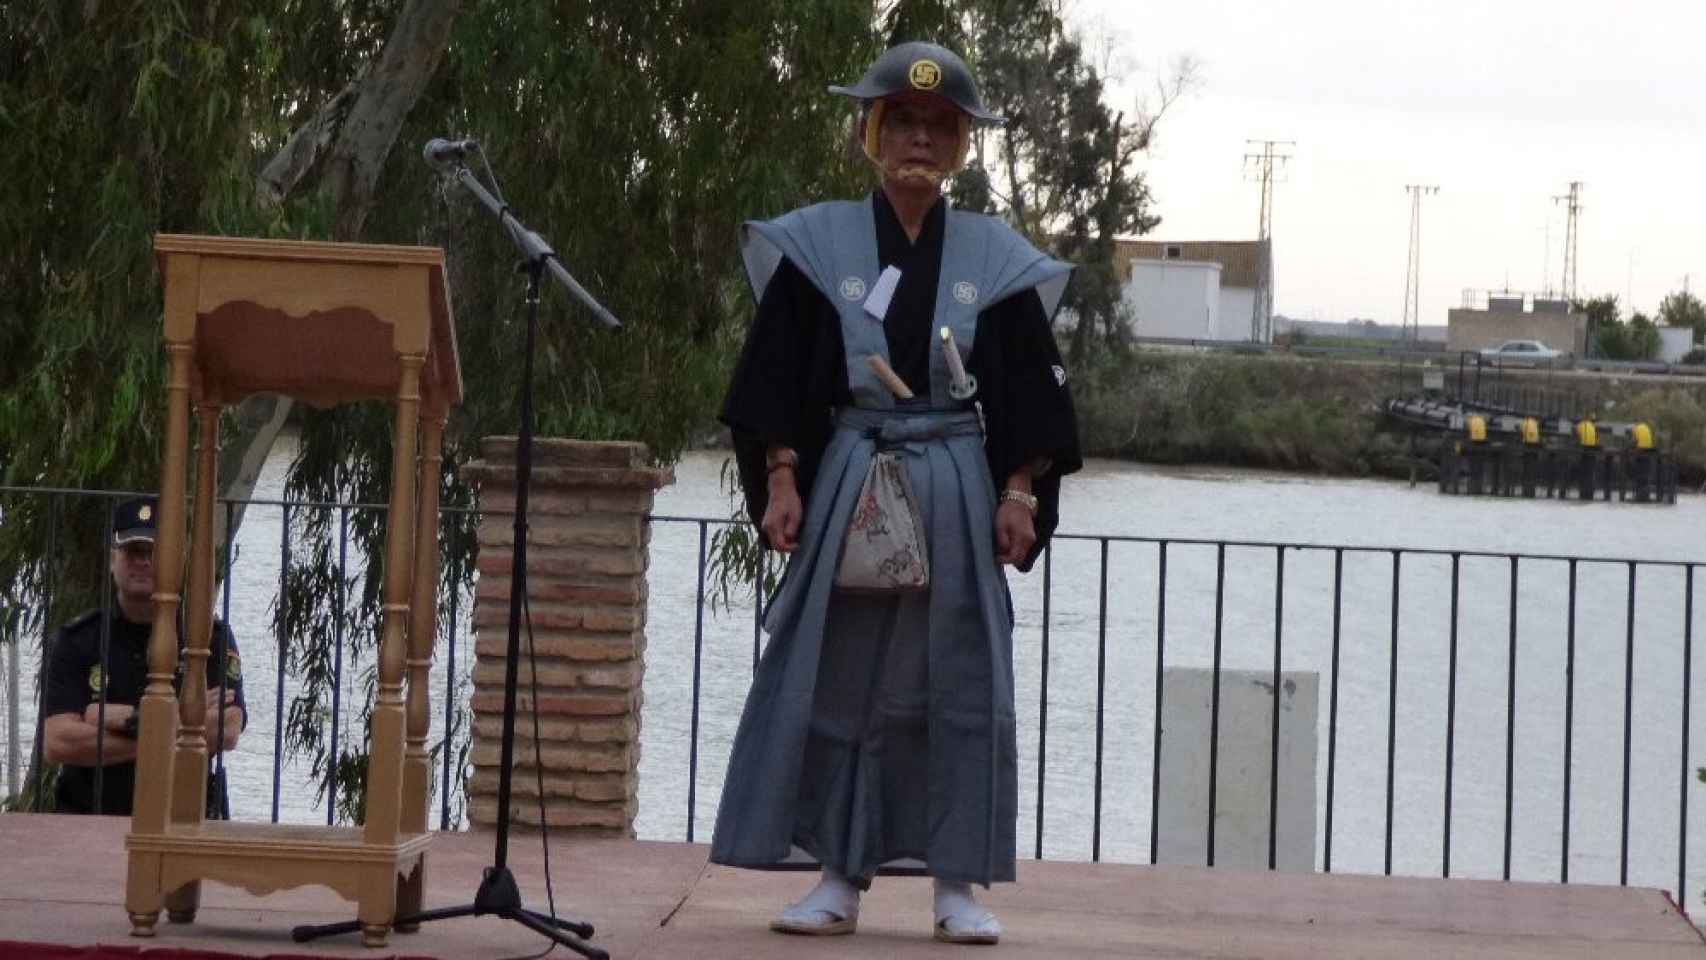 El samurái Hasekura Tsunetaka, XIII generación, heredero del histórico. Falleció en 2019 y su sucesor ya ha visitado Coria del Río dos veces.